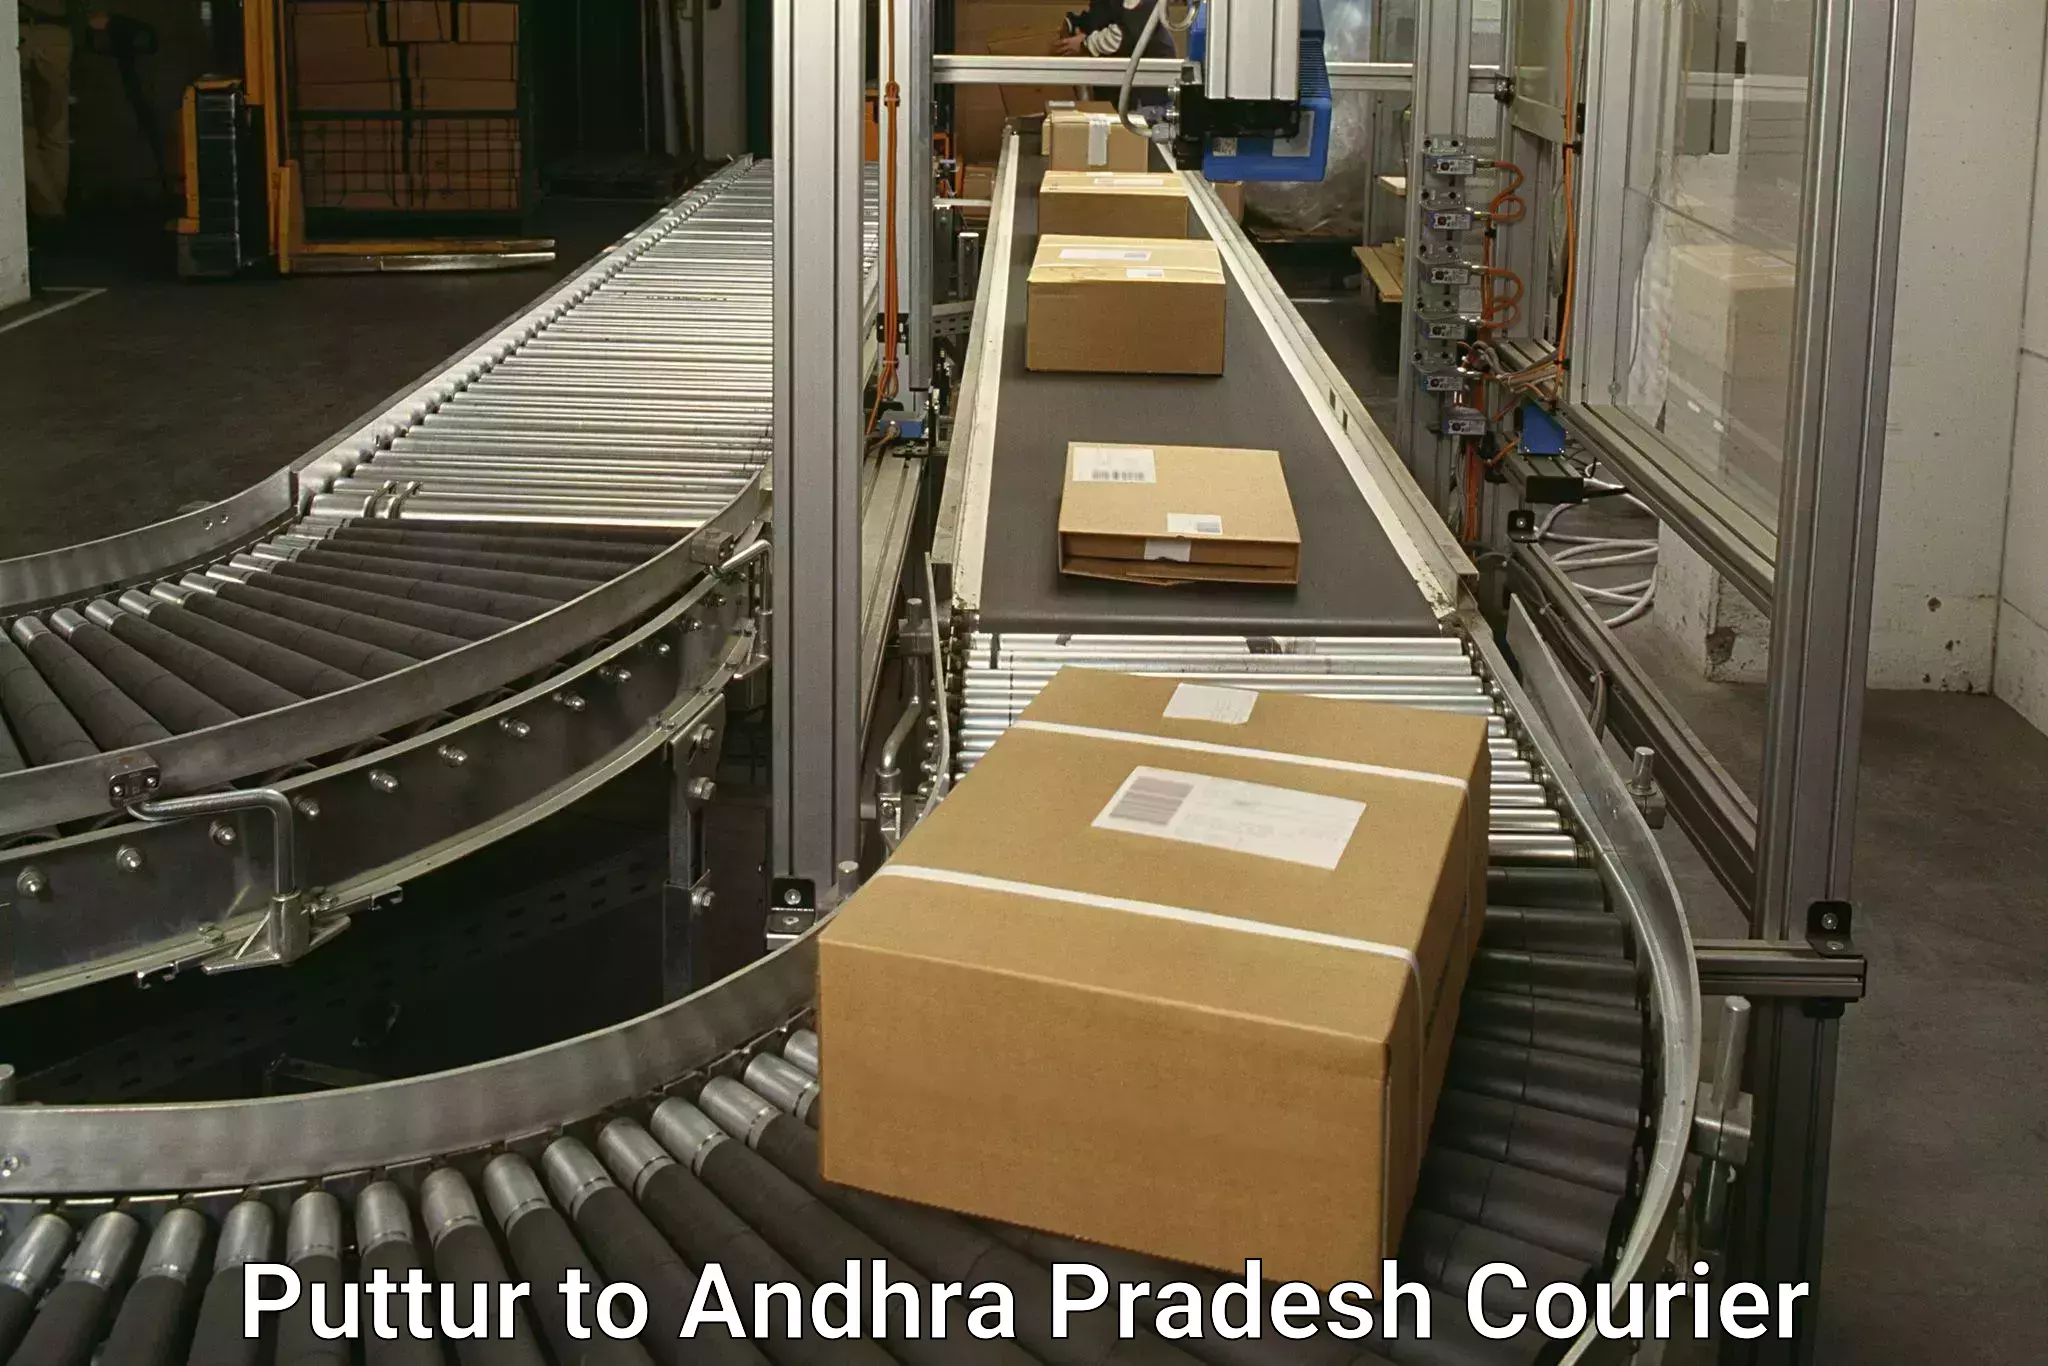 Express courier facilities Puttur to Palakonda